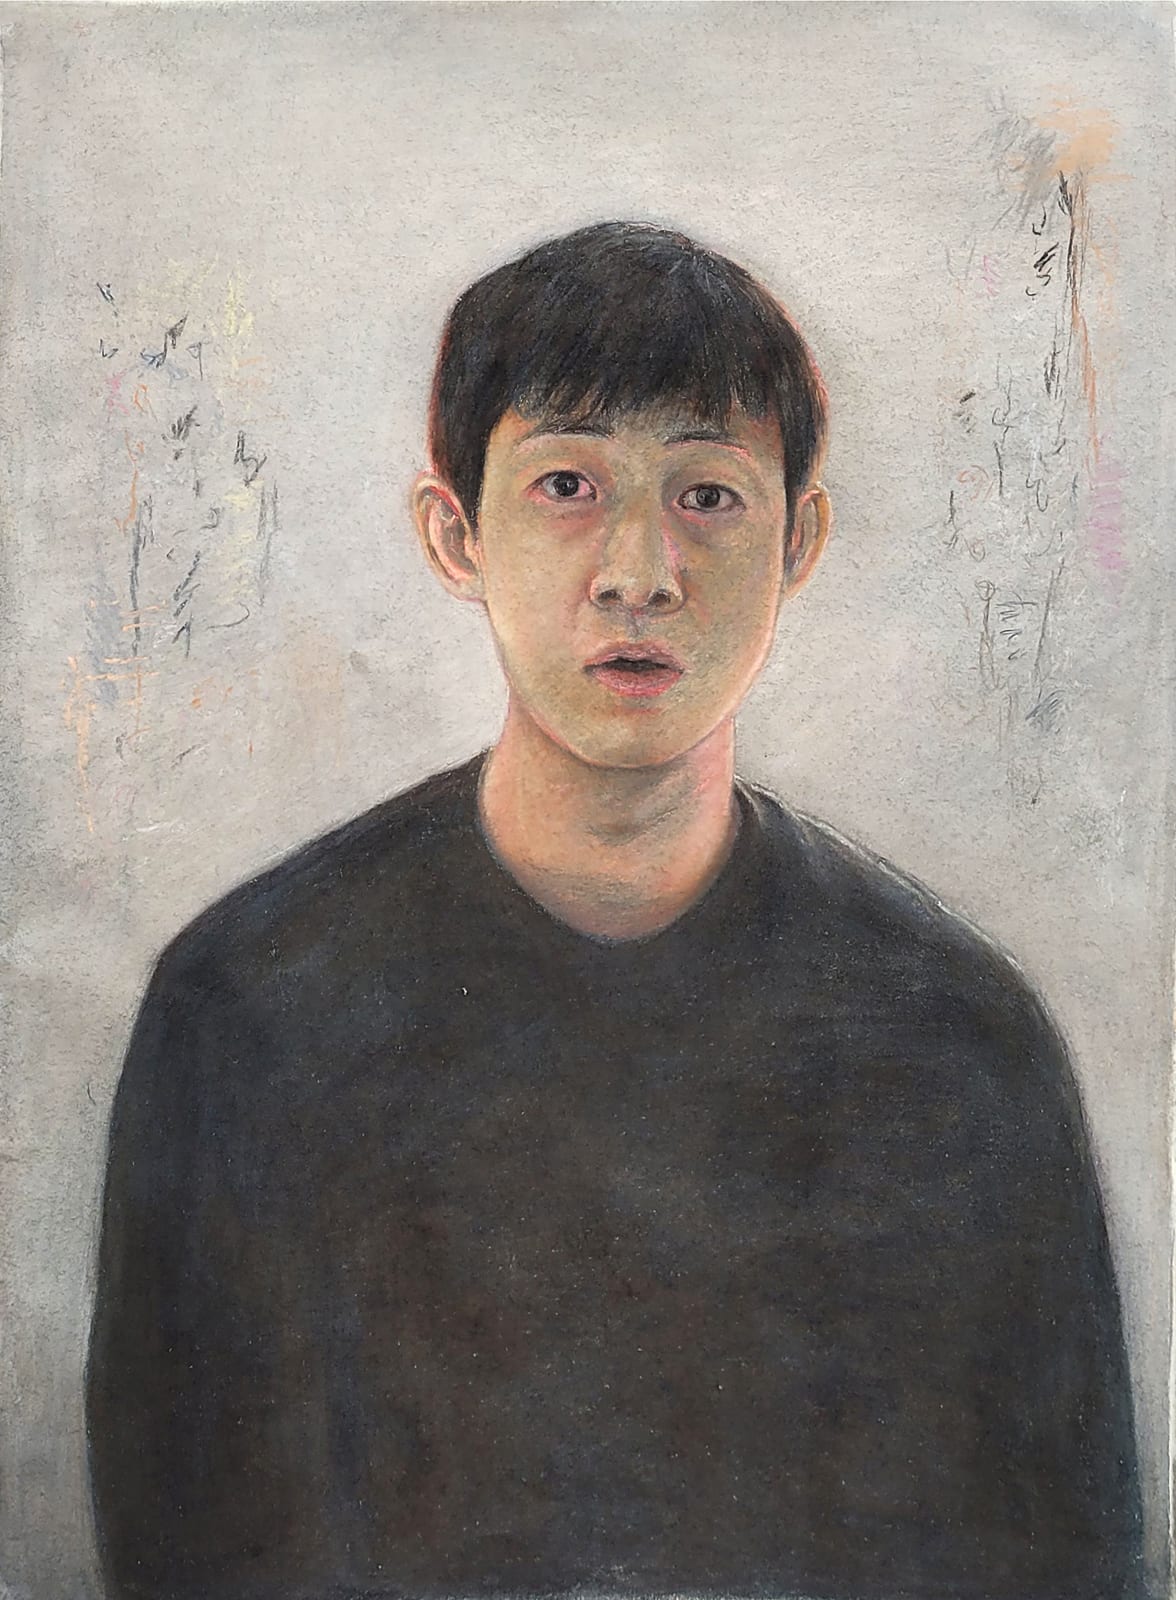 Zearo, Self Portrait, 2022